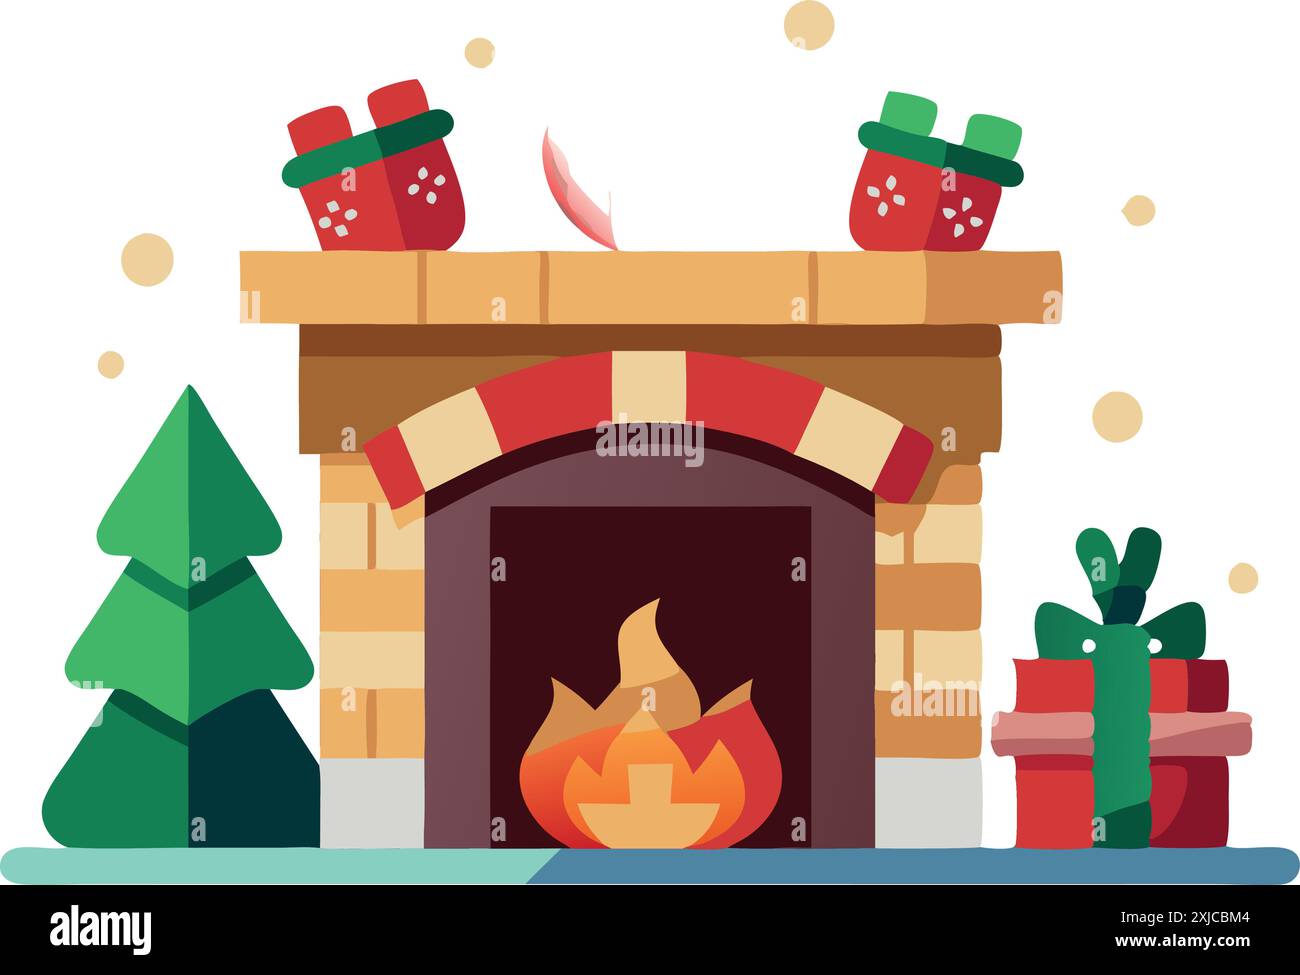 Illustration eines festlichen Weihnachtskamins umgeben von Strümpfen, Geschenken und einem geschmückten Baum, der Wärme und Feiertagsstimmung weckt. Stock Vektor